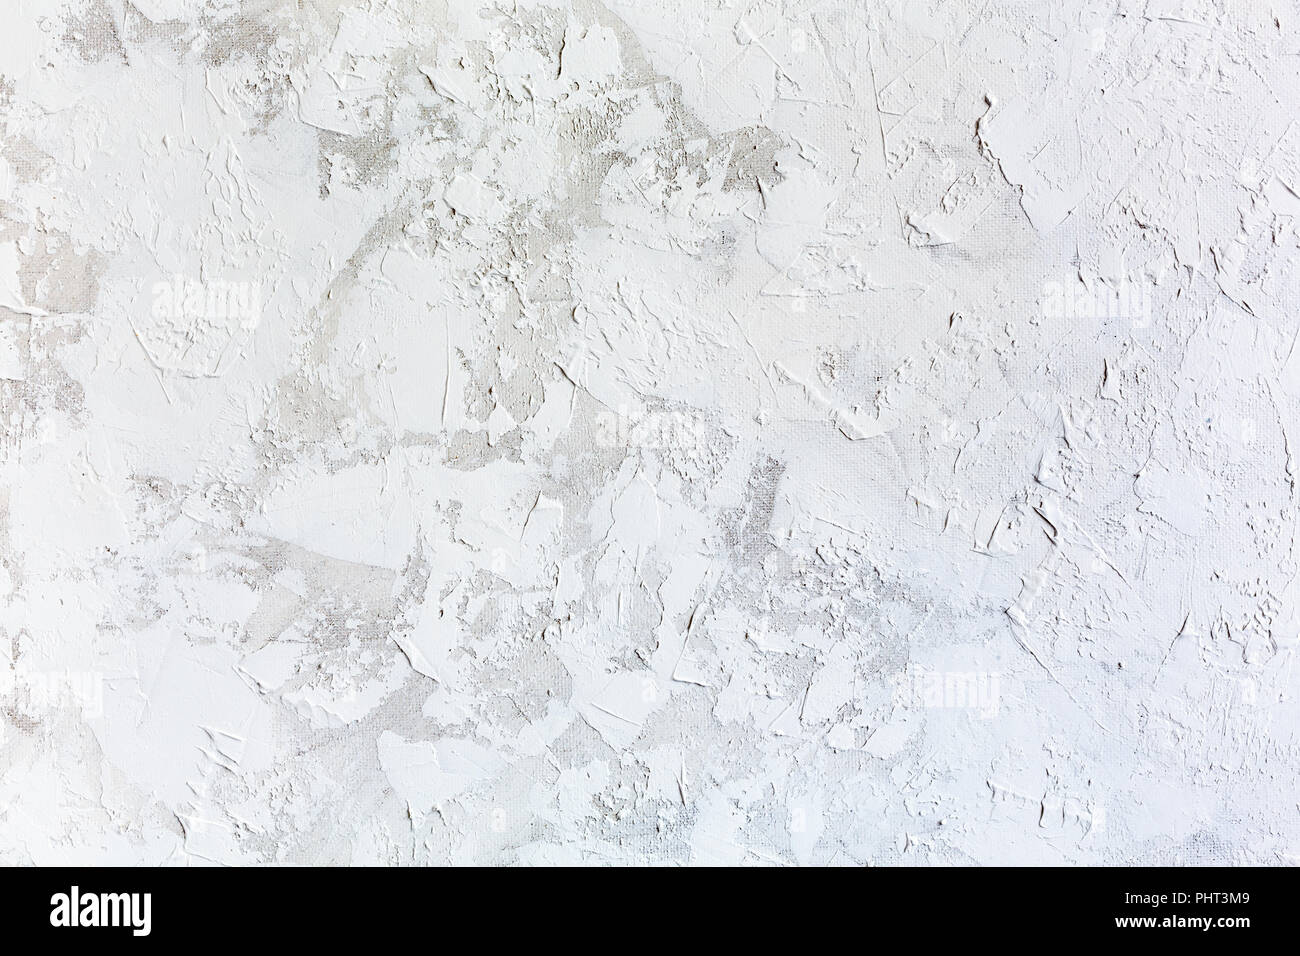 Cemento bianco immagini e fotografie stock ad alta risoluzione - Alamy